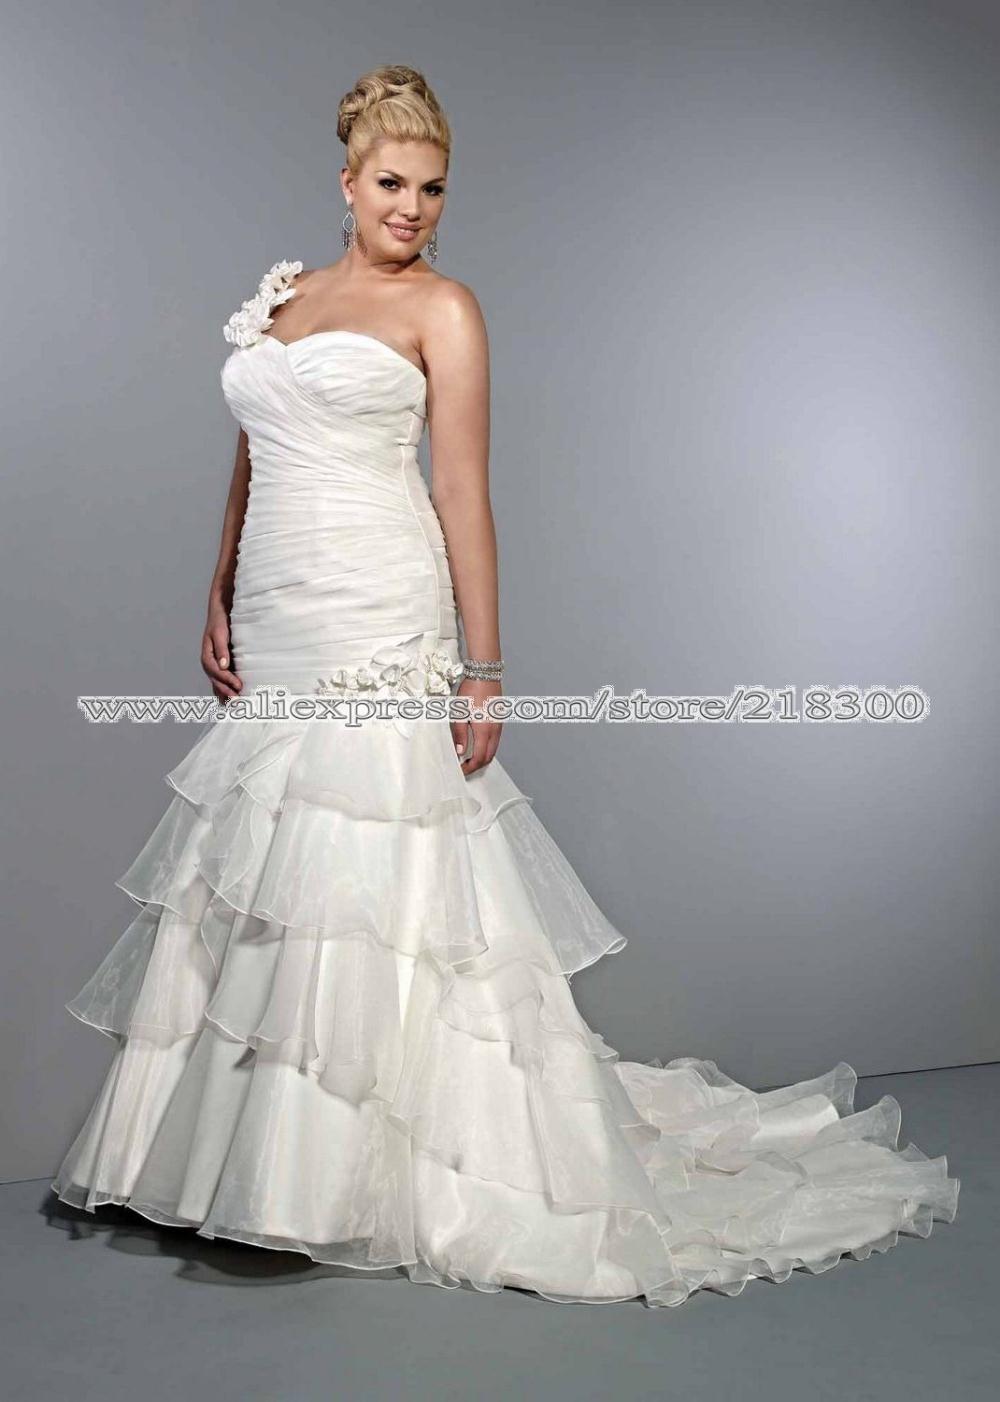 Size 40w wedding dress